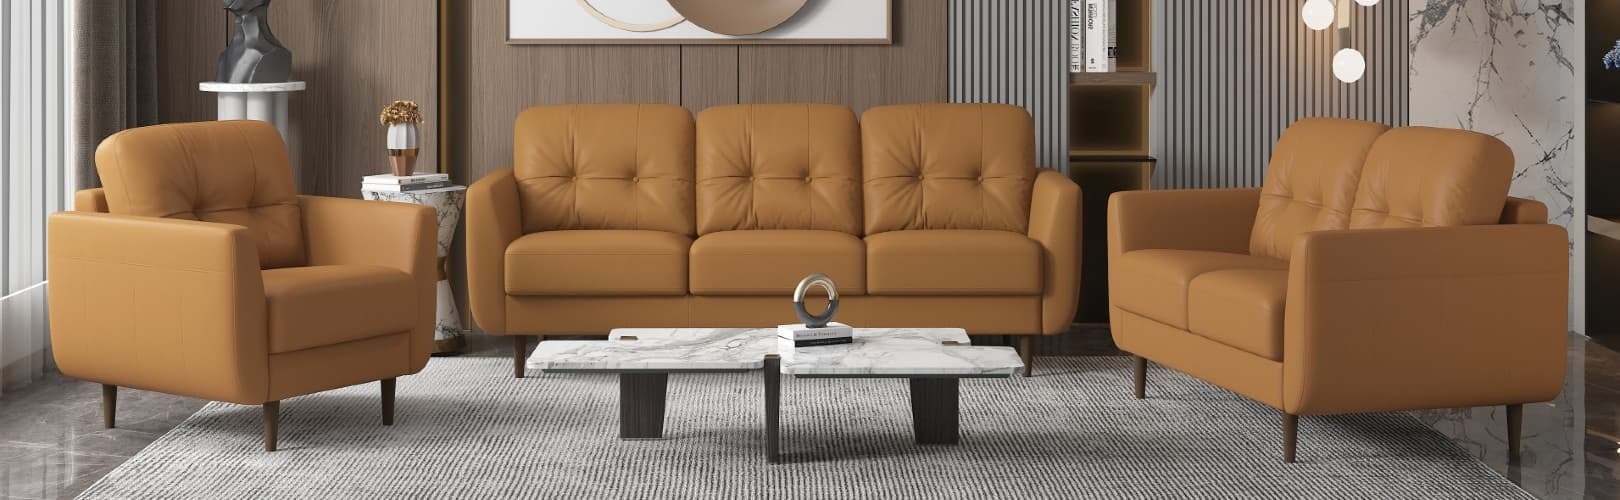 camel leather sofa decorating set